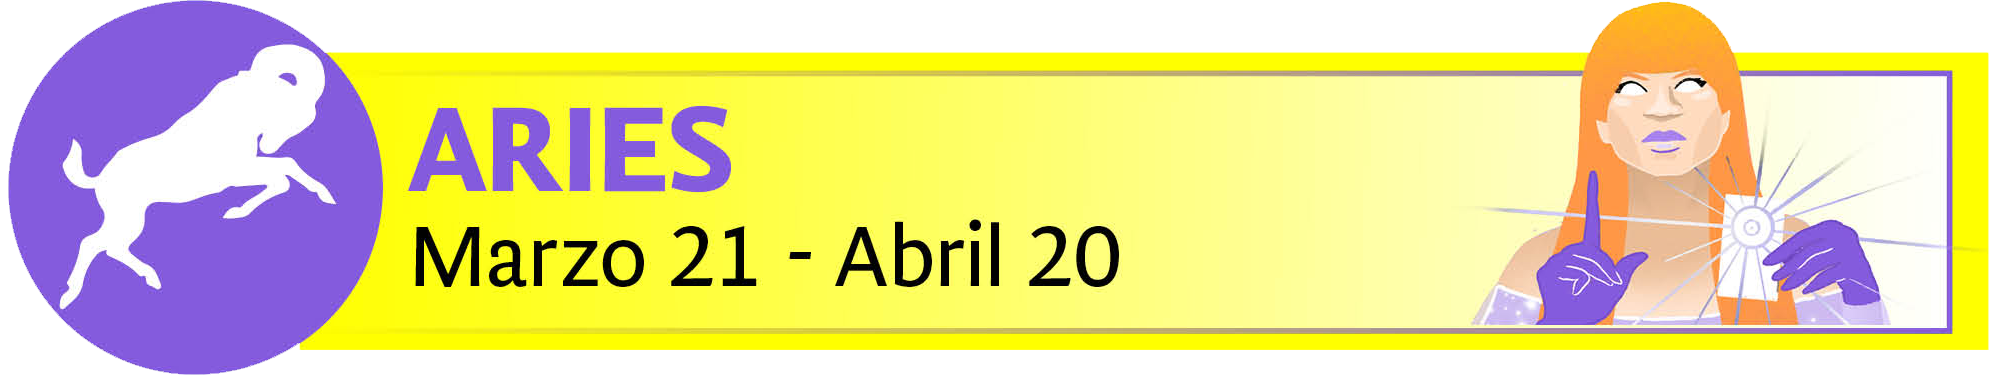 mhoni vidente: los horóscopos de la semana del 15 al 18 de abril